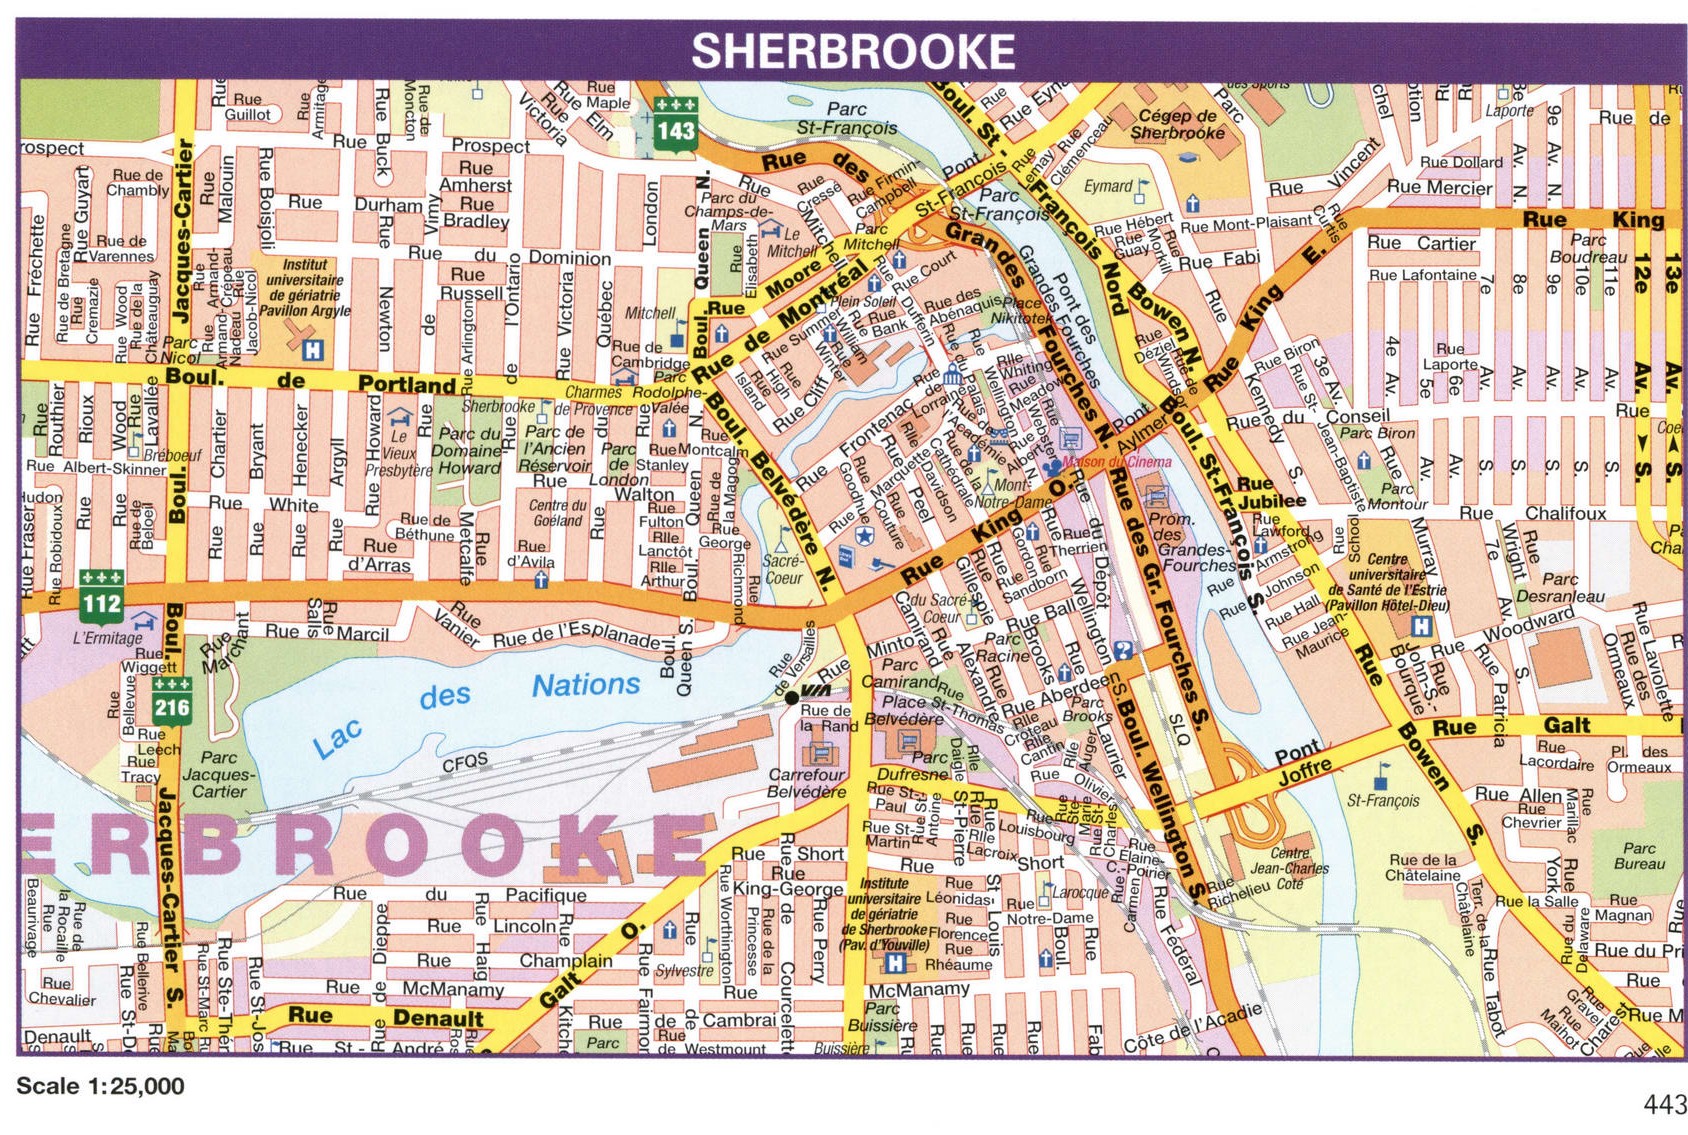 Sherbrooke city map